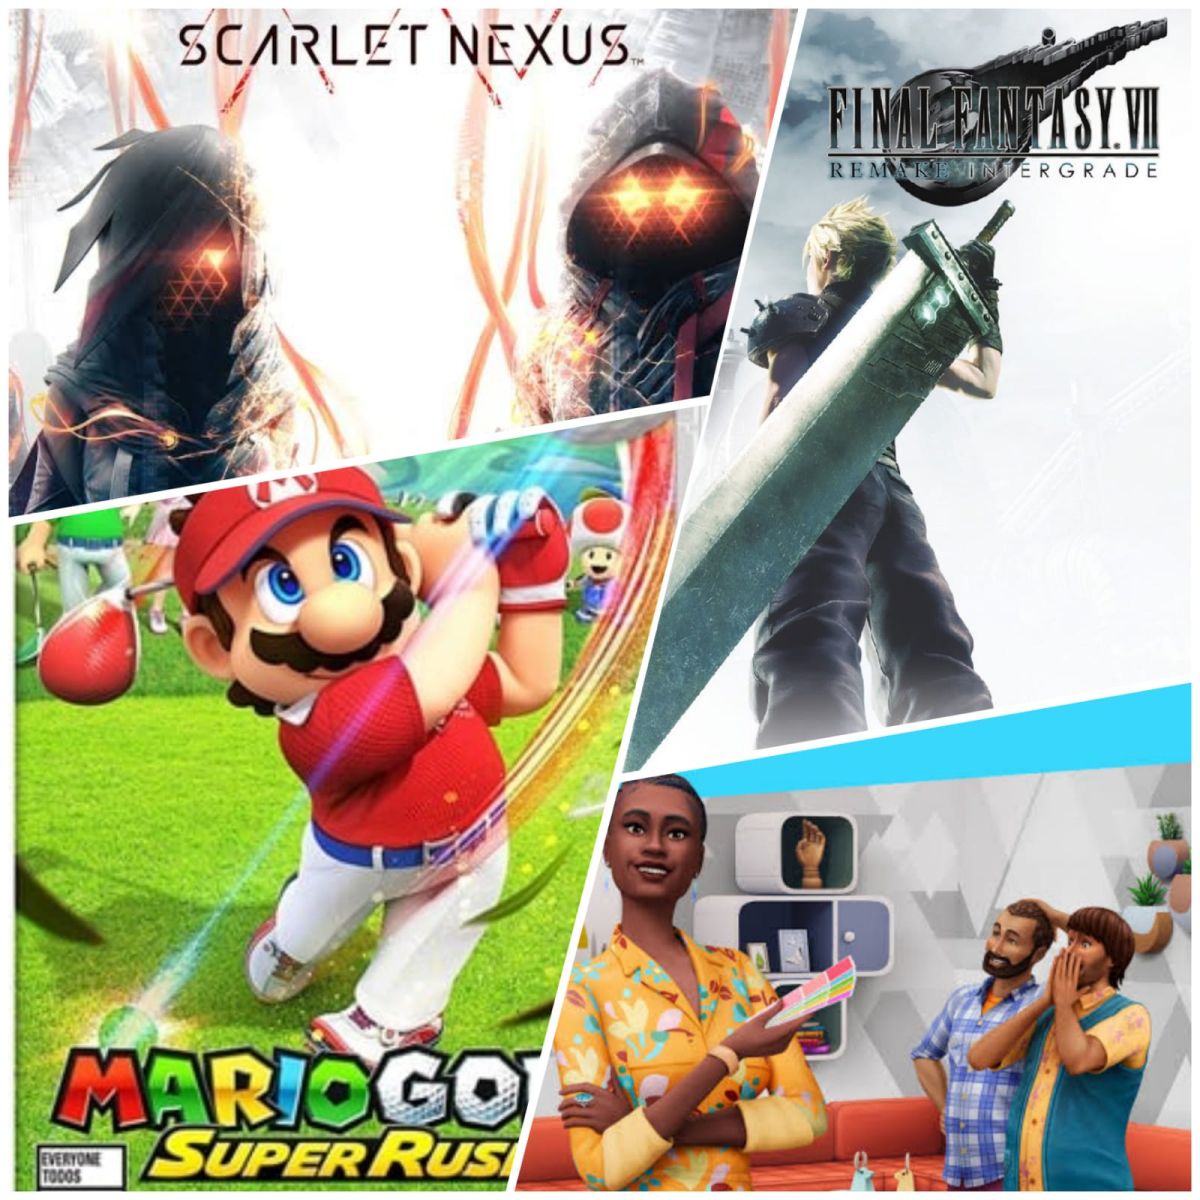 Mario Golf Super Rush Final Fantasy VII Remake Intergrade Scarlet Nexus Los Sims 4 Interiorismo
